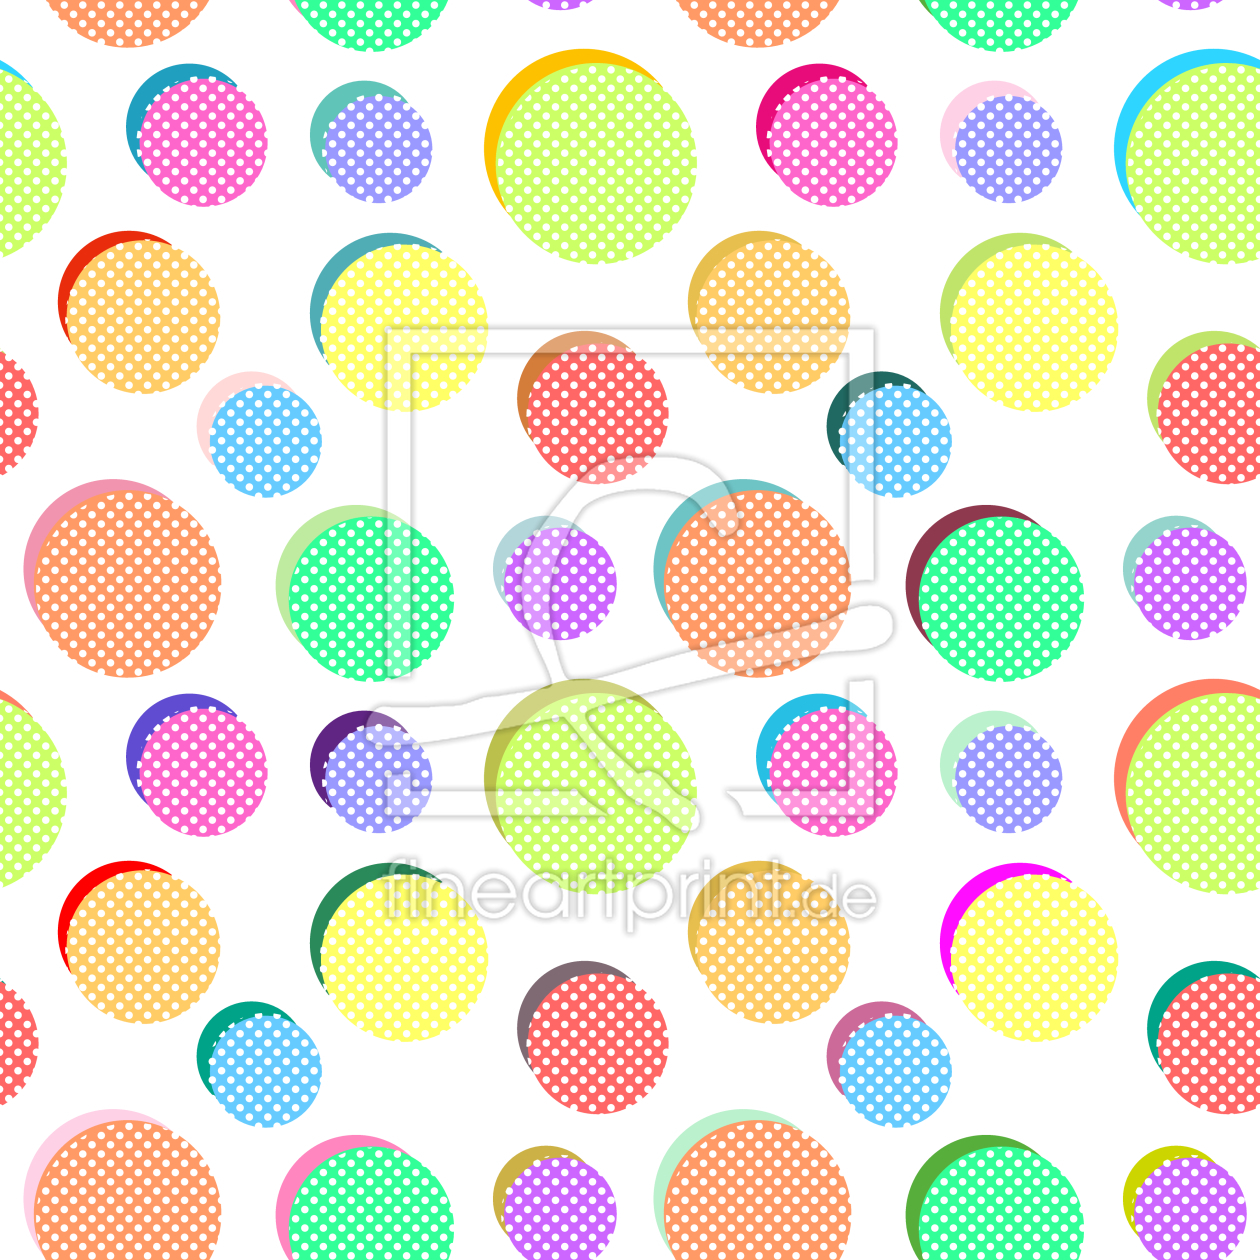 Bild-Nr.: 9011965 Pop-Art Bälle erstellt von patterndesigns-com